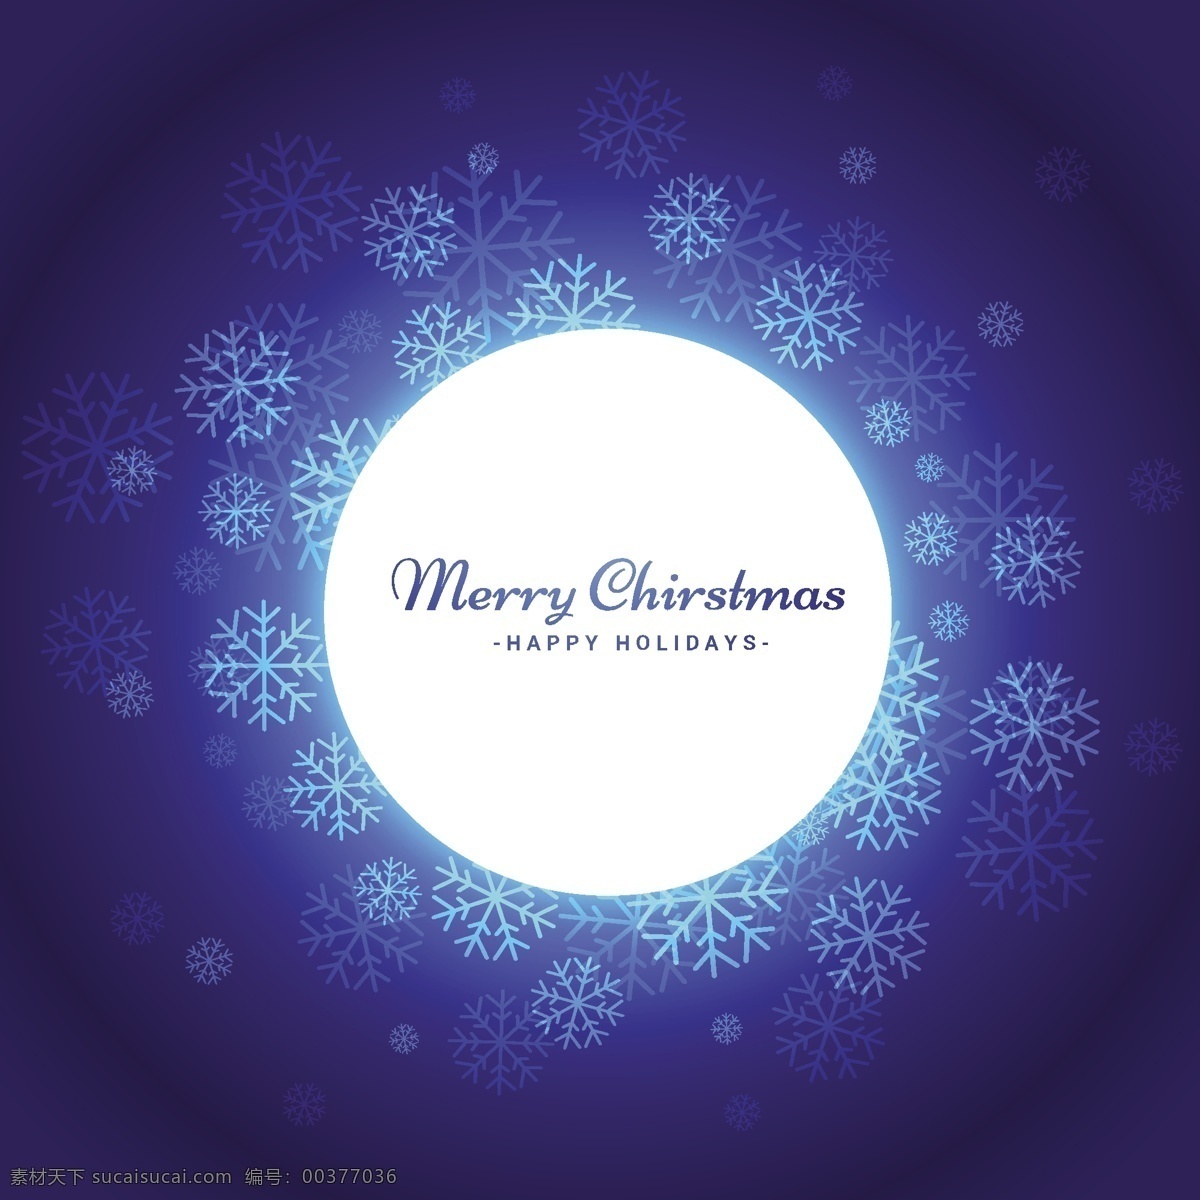 圣诞节 雪花 背景 明星卡 新的一年里 雪 蓝色的背景 圣诞快乐 冬天 蓝色背景 圣诞卡 圣诞 庆祝 节日 假日 新的雪花 闪闪发光